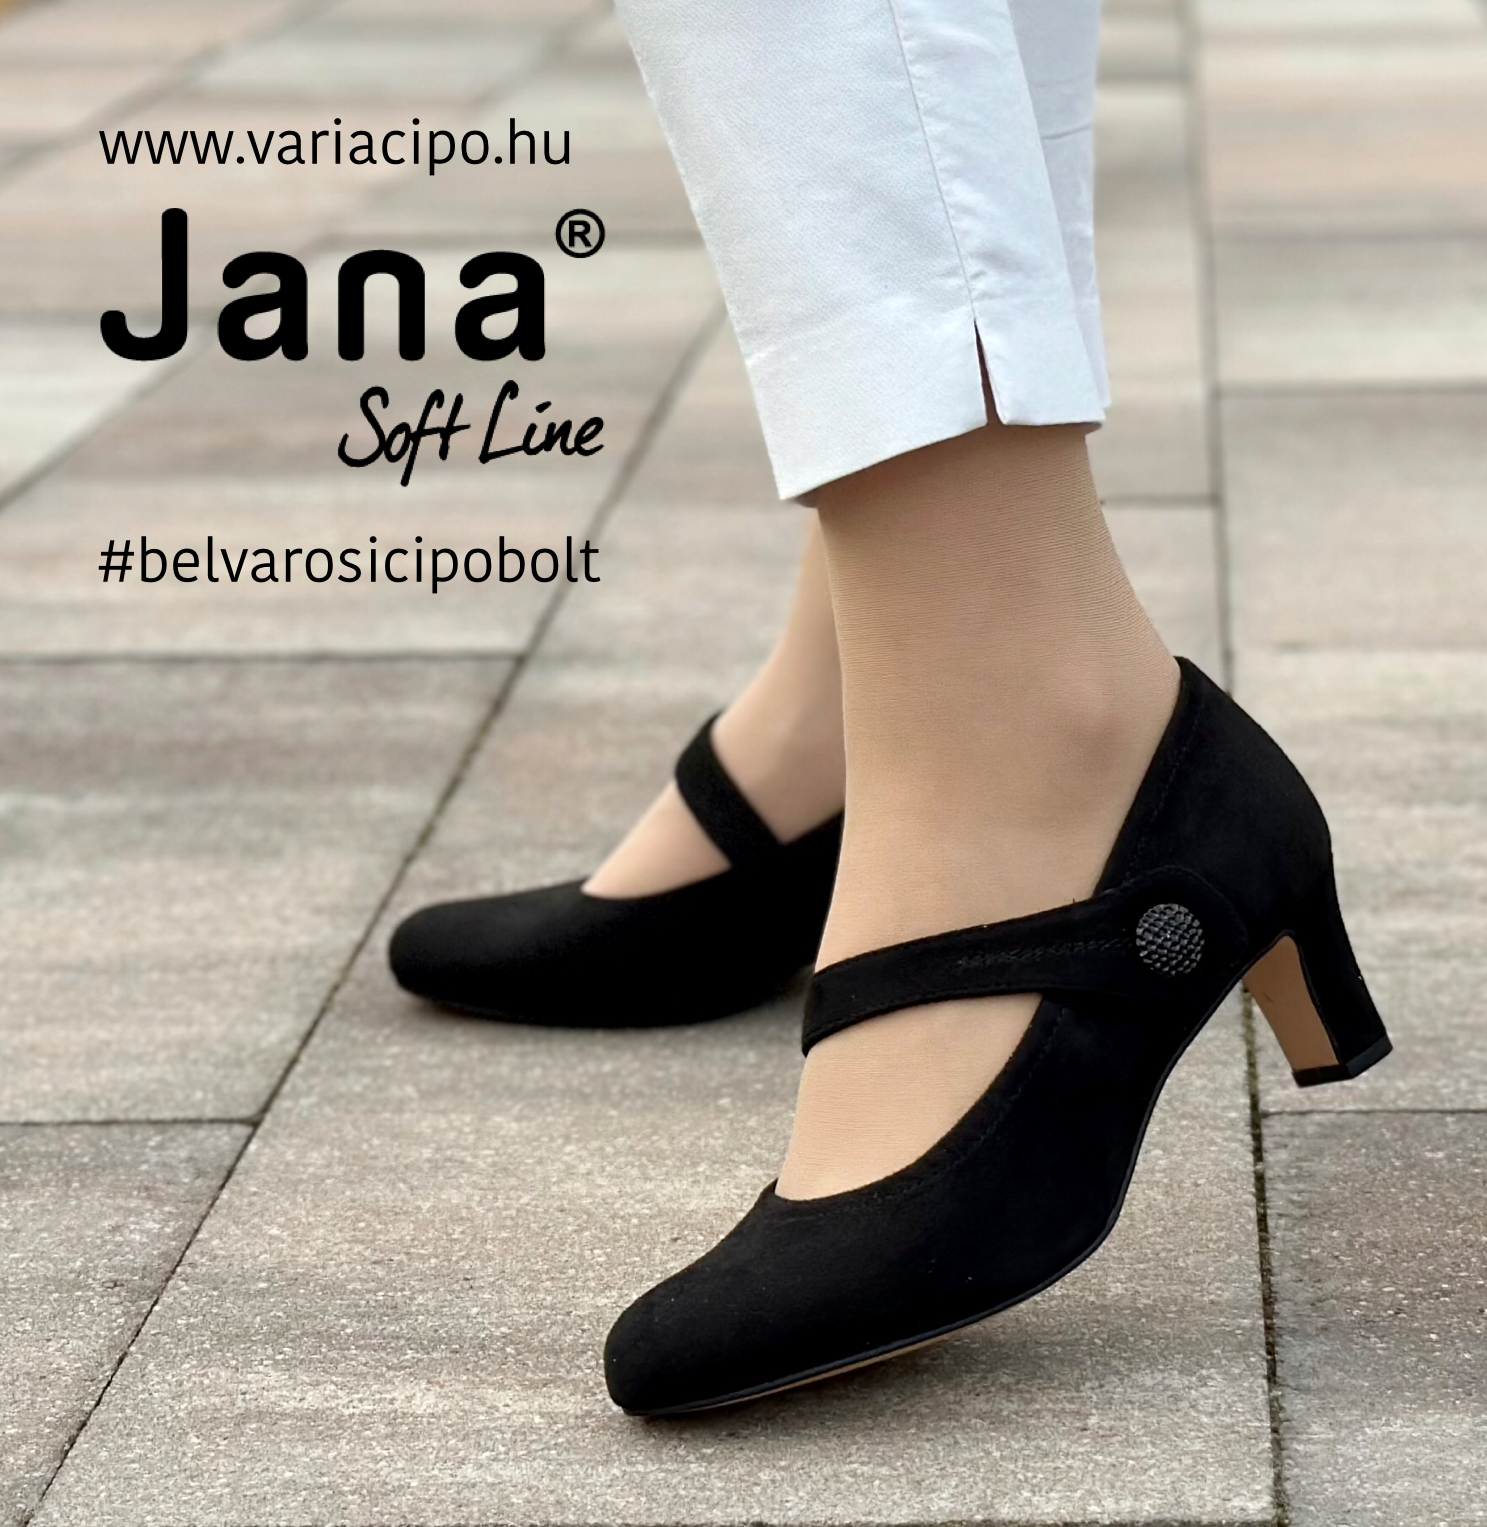 Jana pántos fekete félcipő, 8-22473-41-001 black